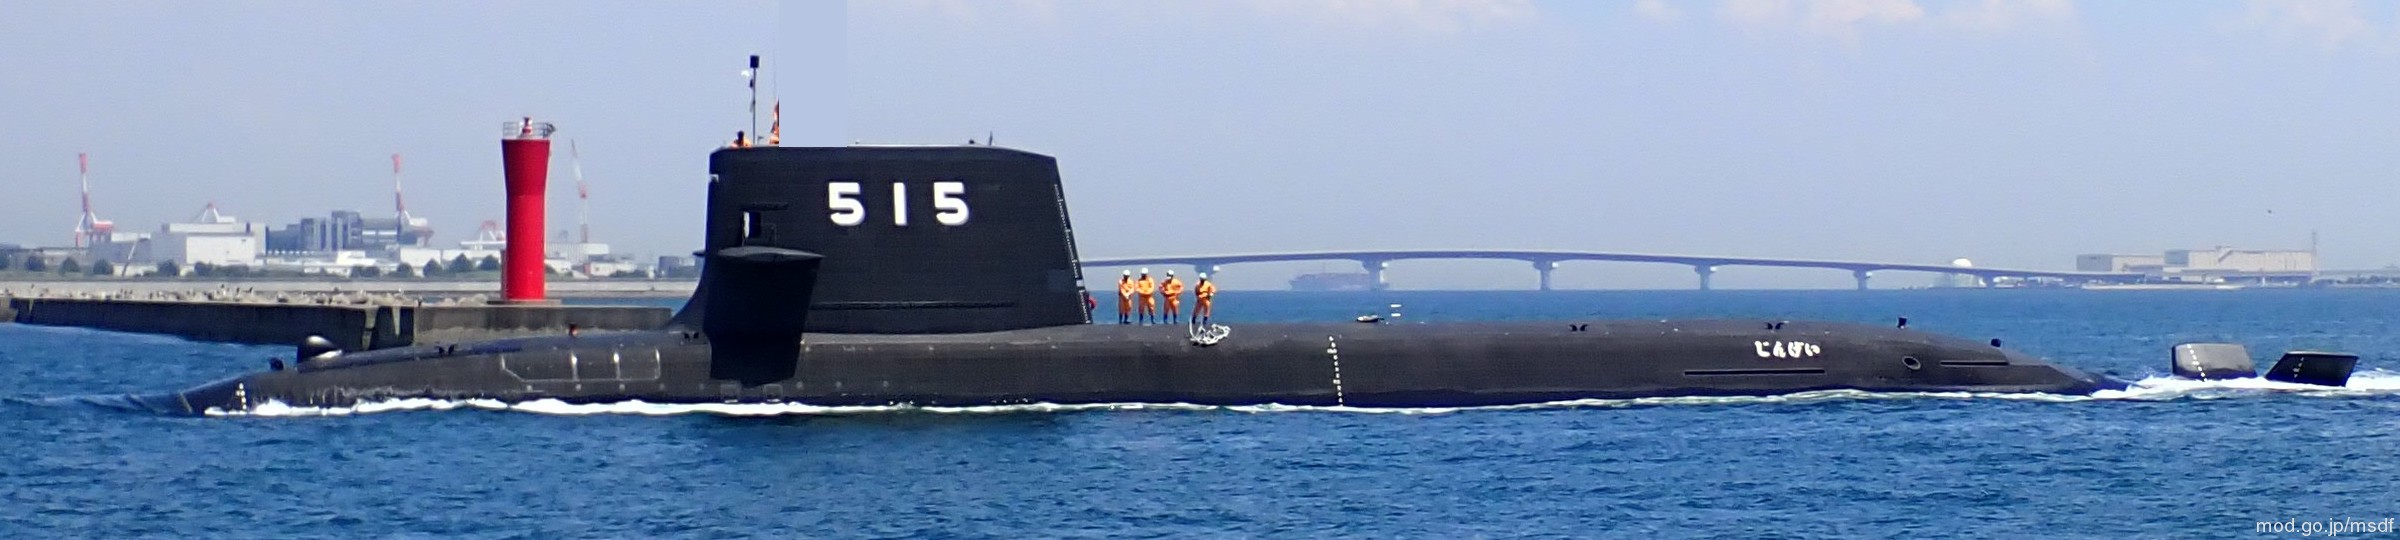 ss-515 js jingei taigei 29ss class attack submarine ssk aip japan maritime self defense force jmsdf 06